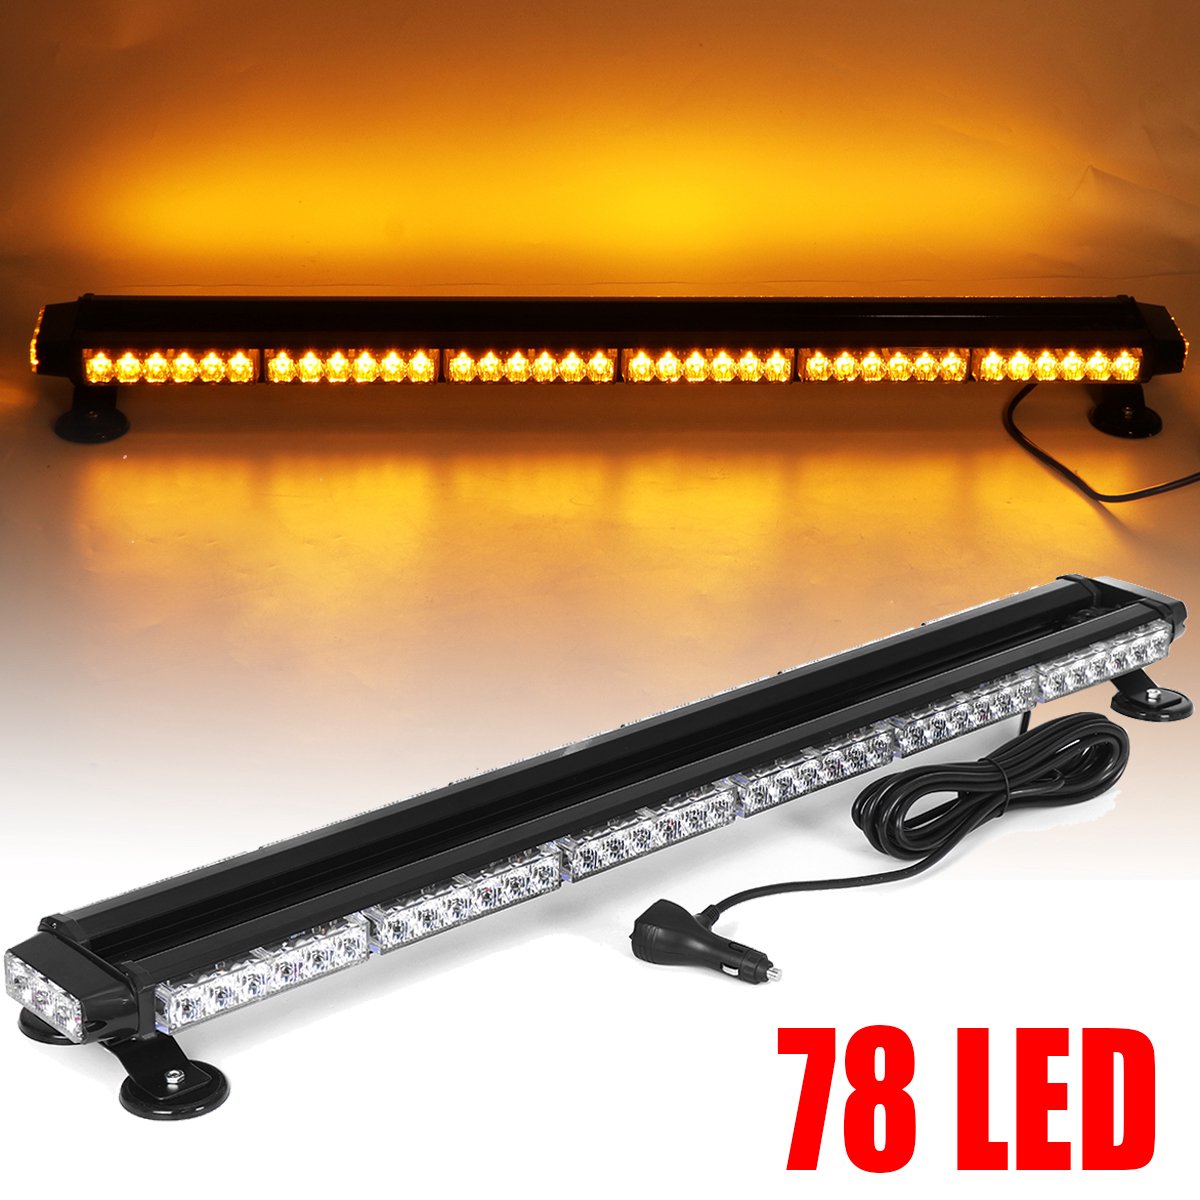 78 LED flitser met tweezijdig amberkleurig waarschuwingslicht, 96 cm lang